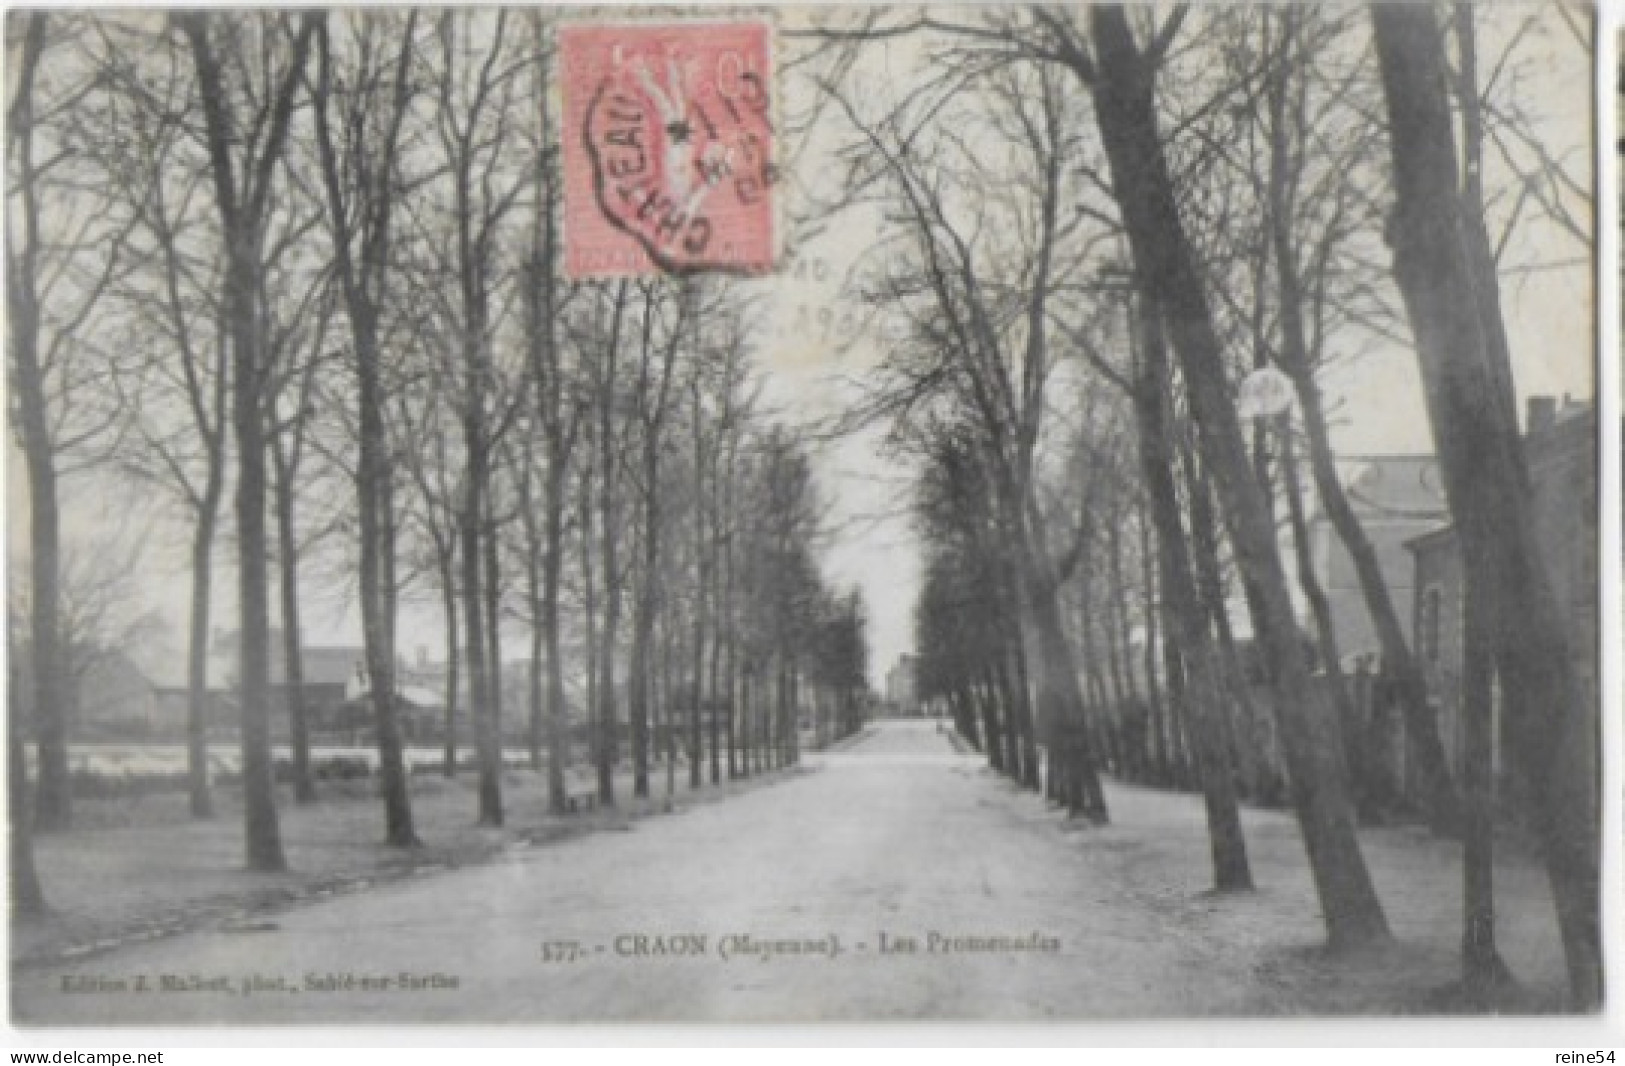 53 CRAON (Mayenne) Les Promenades Circulé 1904 Edit. J. Malicot Sablé Sur Sarthe N° 577 - Craon